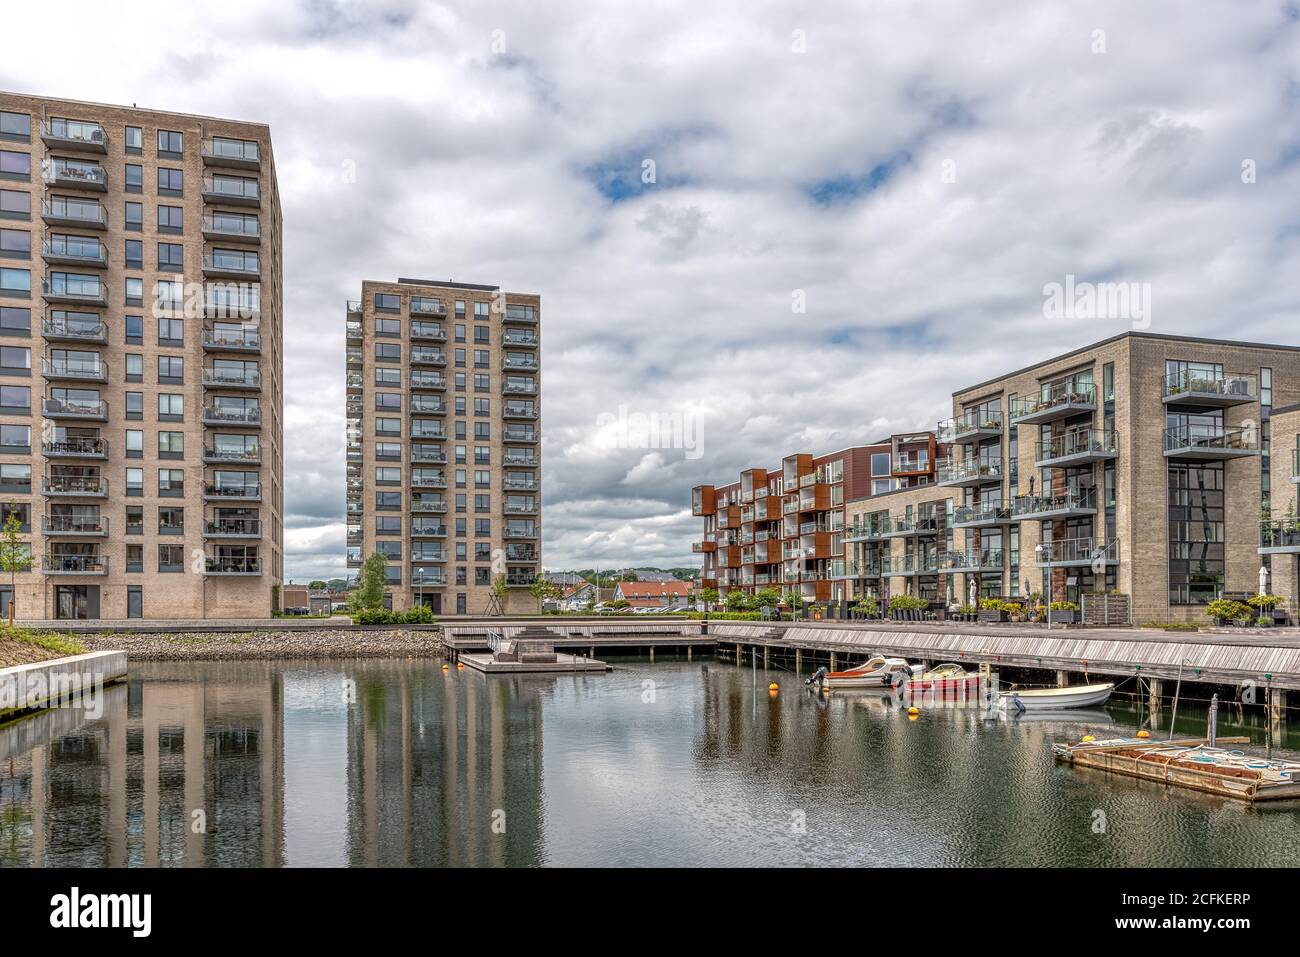 Marina con alti edifici che si riflettono nelle acque, Vejle, Danimarca, 9 giugno 2020 Foto Stock